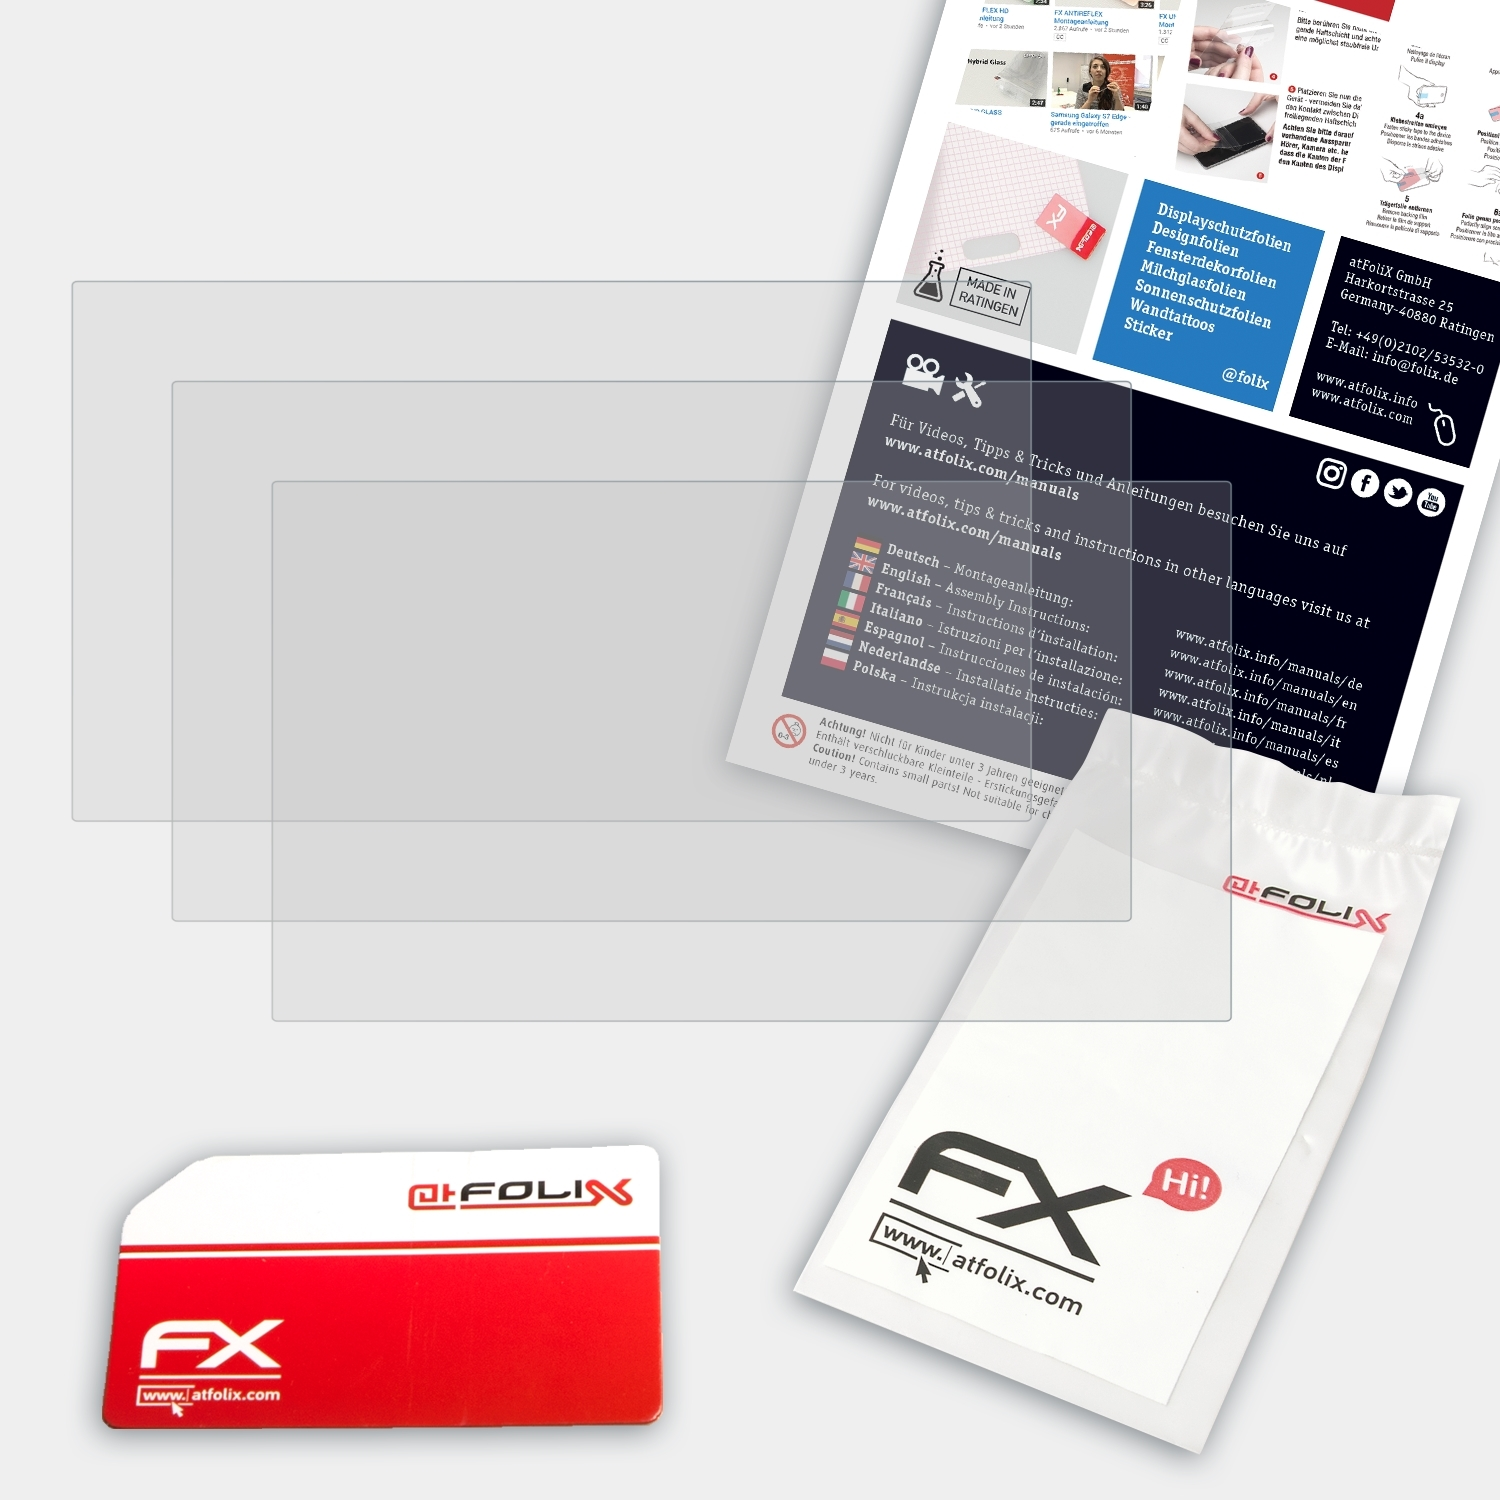 Panasonic Displayschutz(für 3x FX-Antireflex ATFOLIX HDC-SD909)